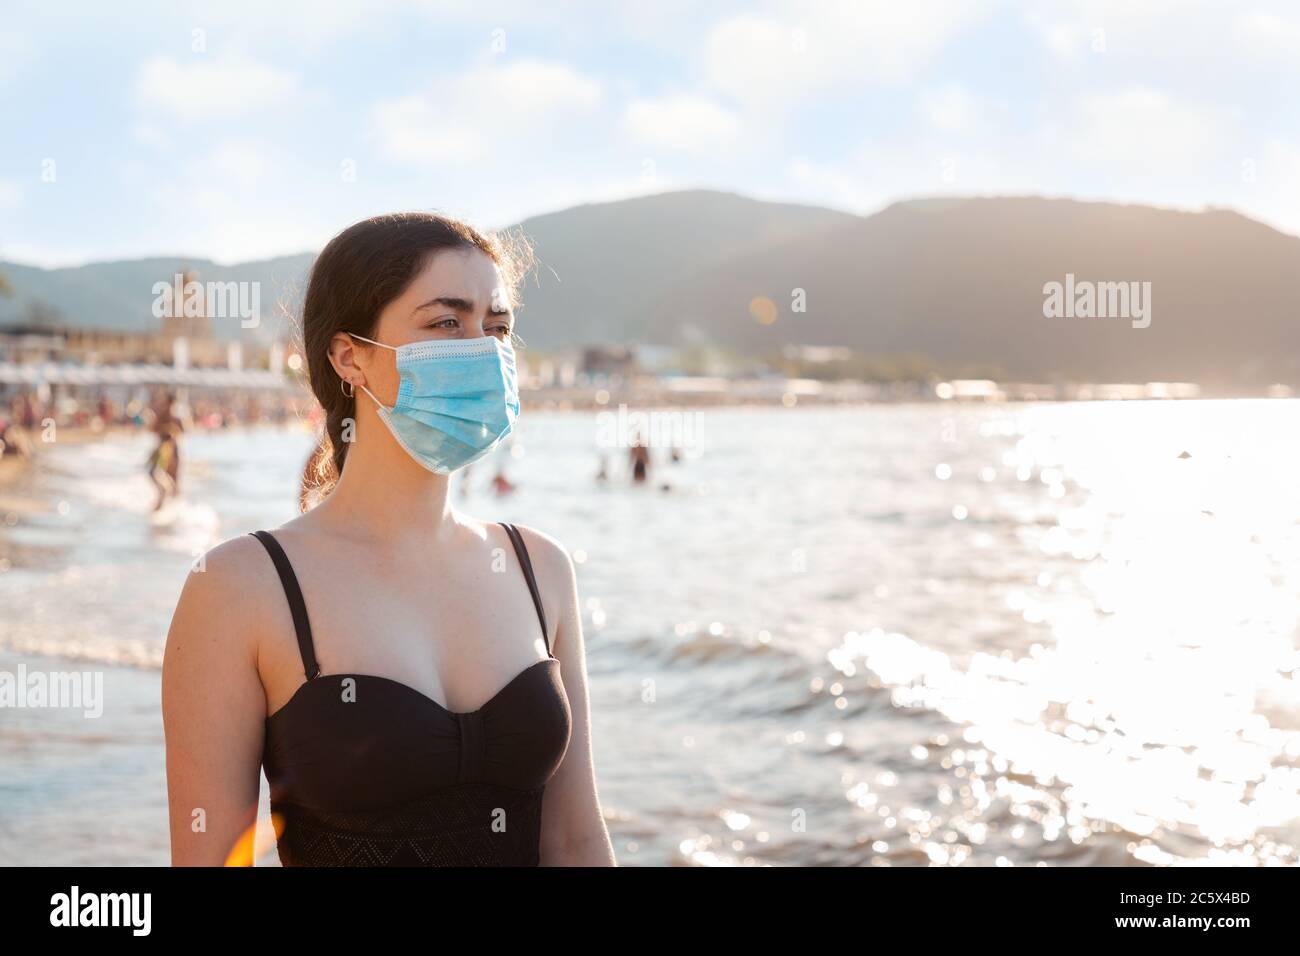 Ritratto di una donna in costume da bagno e maschera medica si trova sulla spiaggia. Concetto di riposo durante una pandemia virale. Spazio di copia. Foto Stock